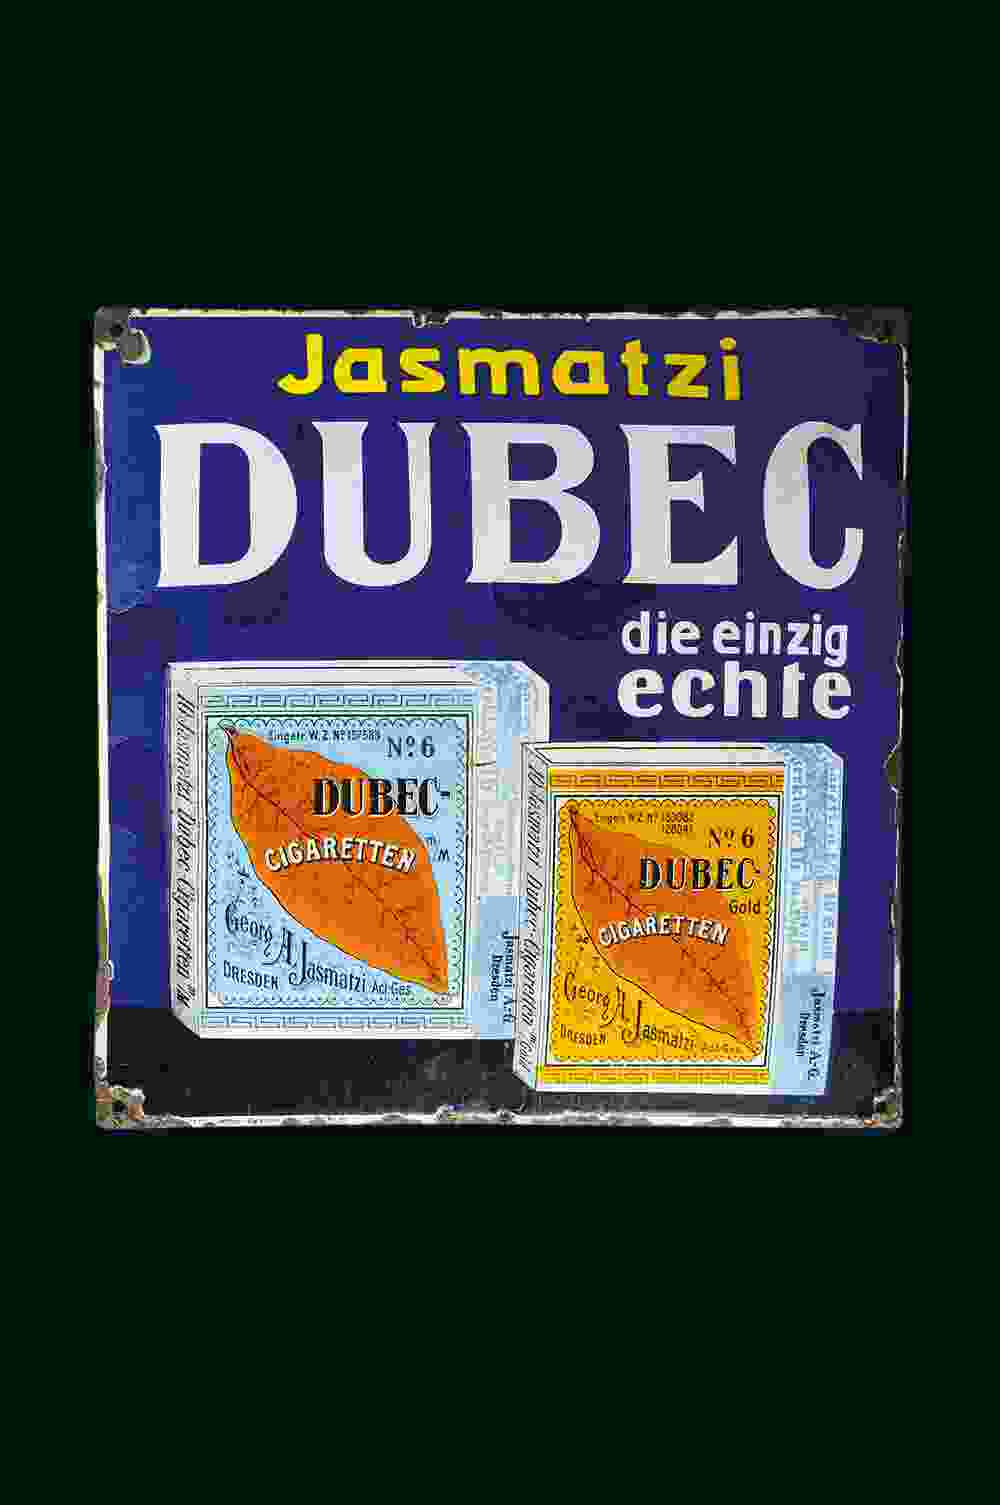 Jasmatzi Dubec-Cigaretten 